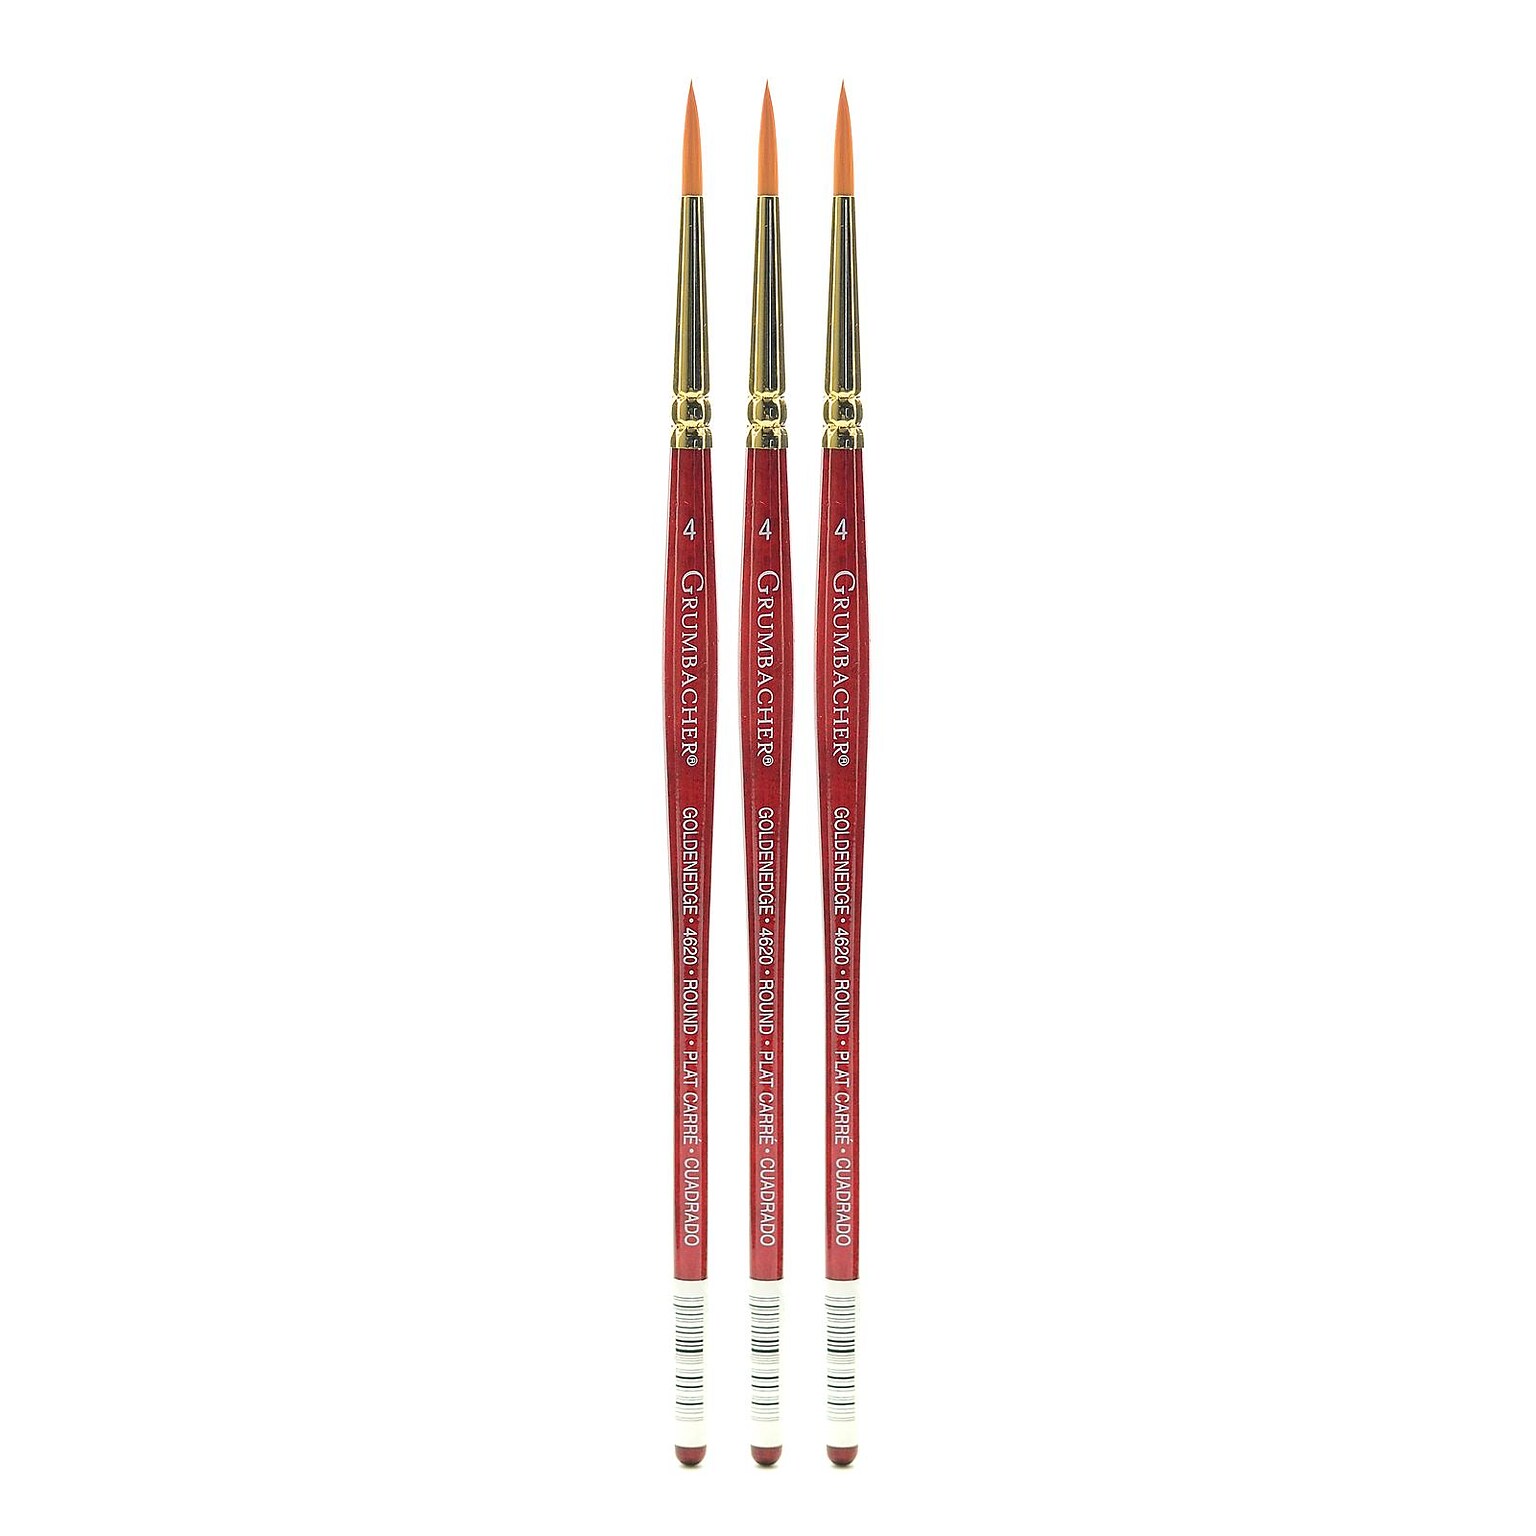 Grumbacher Goldenedge Watercolor Brushes 4 round [Pack of 3] (PK3-4620.4)